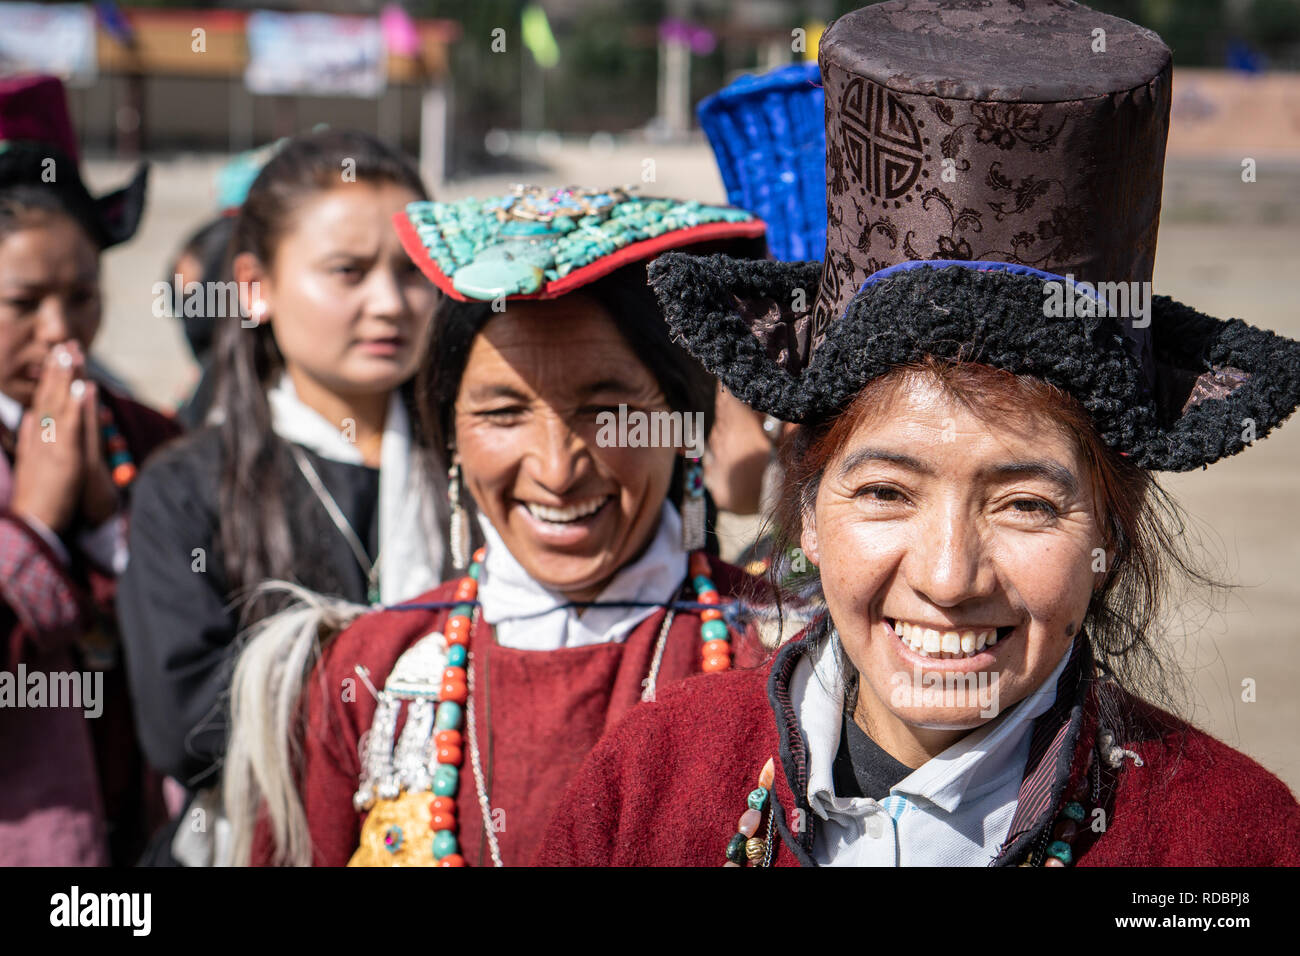 Ladakh, India - 4 de septiembre de 2018: Retrato de mujer étnica india sonriente con ropas tradicionales en festival en Ladakh. Editorial ilustrativos. Foto de stock